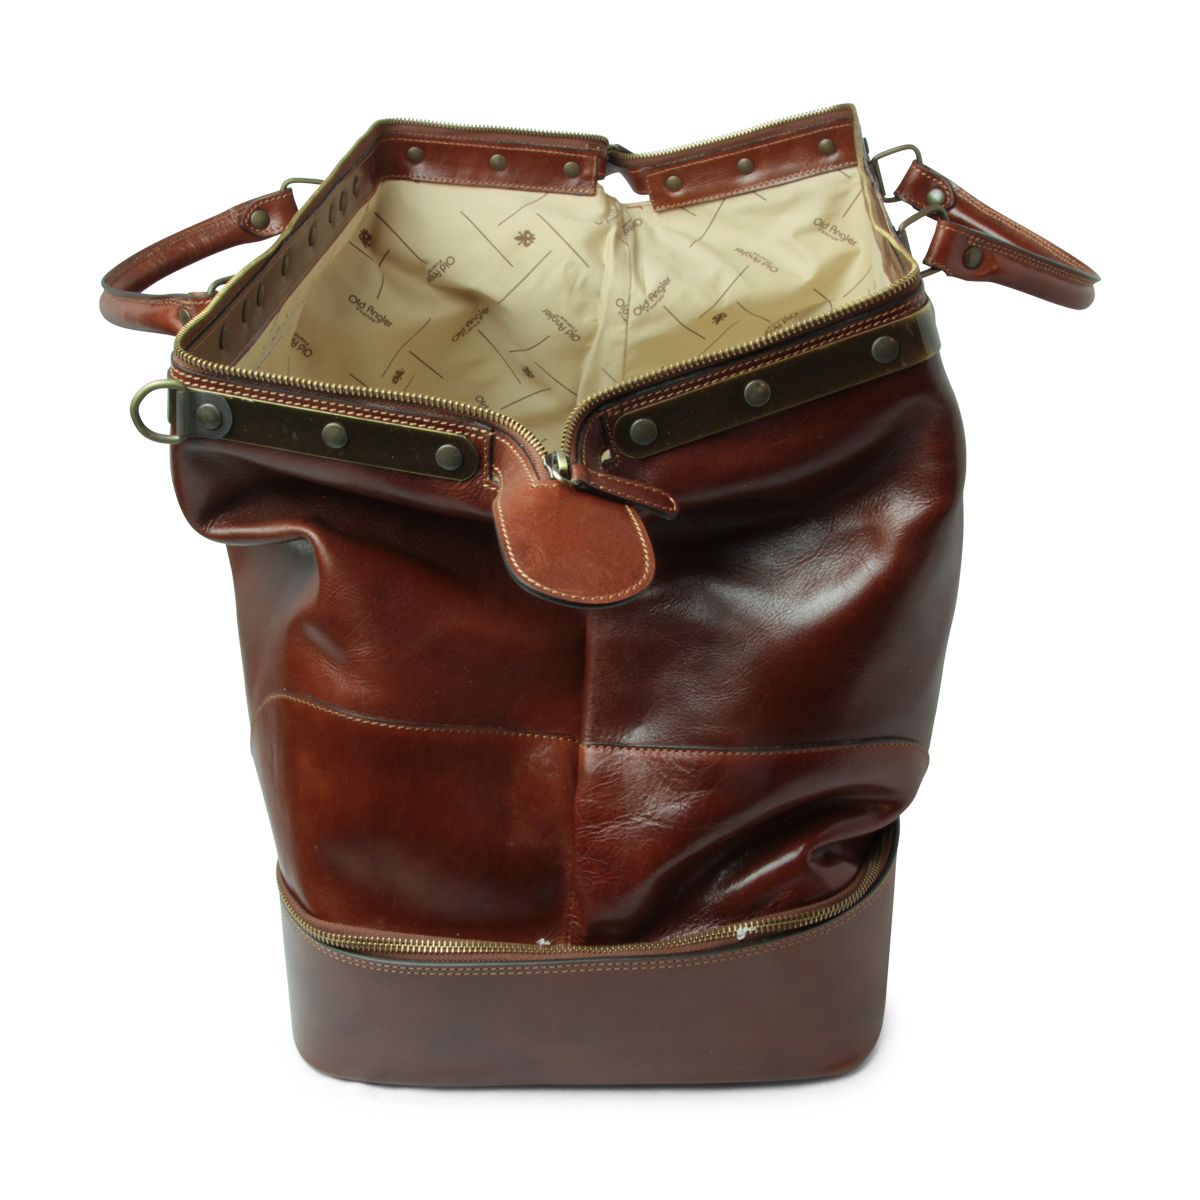 Borsa in pelle da viaggio modello vecchia America, un borsone vintage prodotto come si faceva alla fine degli anni 1800.